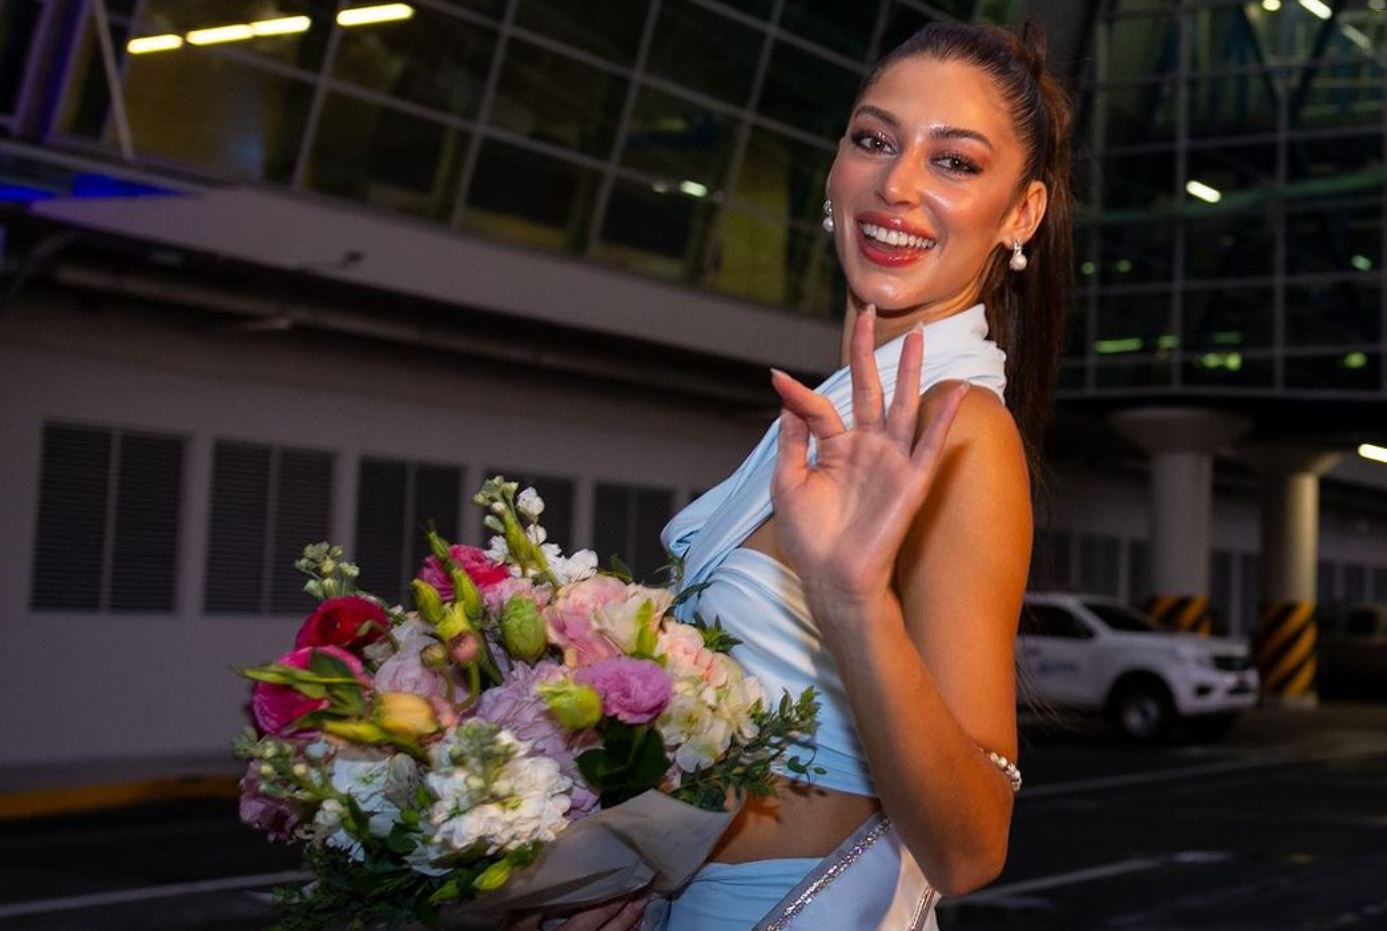 Một hoa hậu bay chuyên cơ riêng đến thi Hoa hậu Hoàn vũ, nhan sắc cũng 'chấn động' không kém - ảnh 2